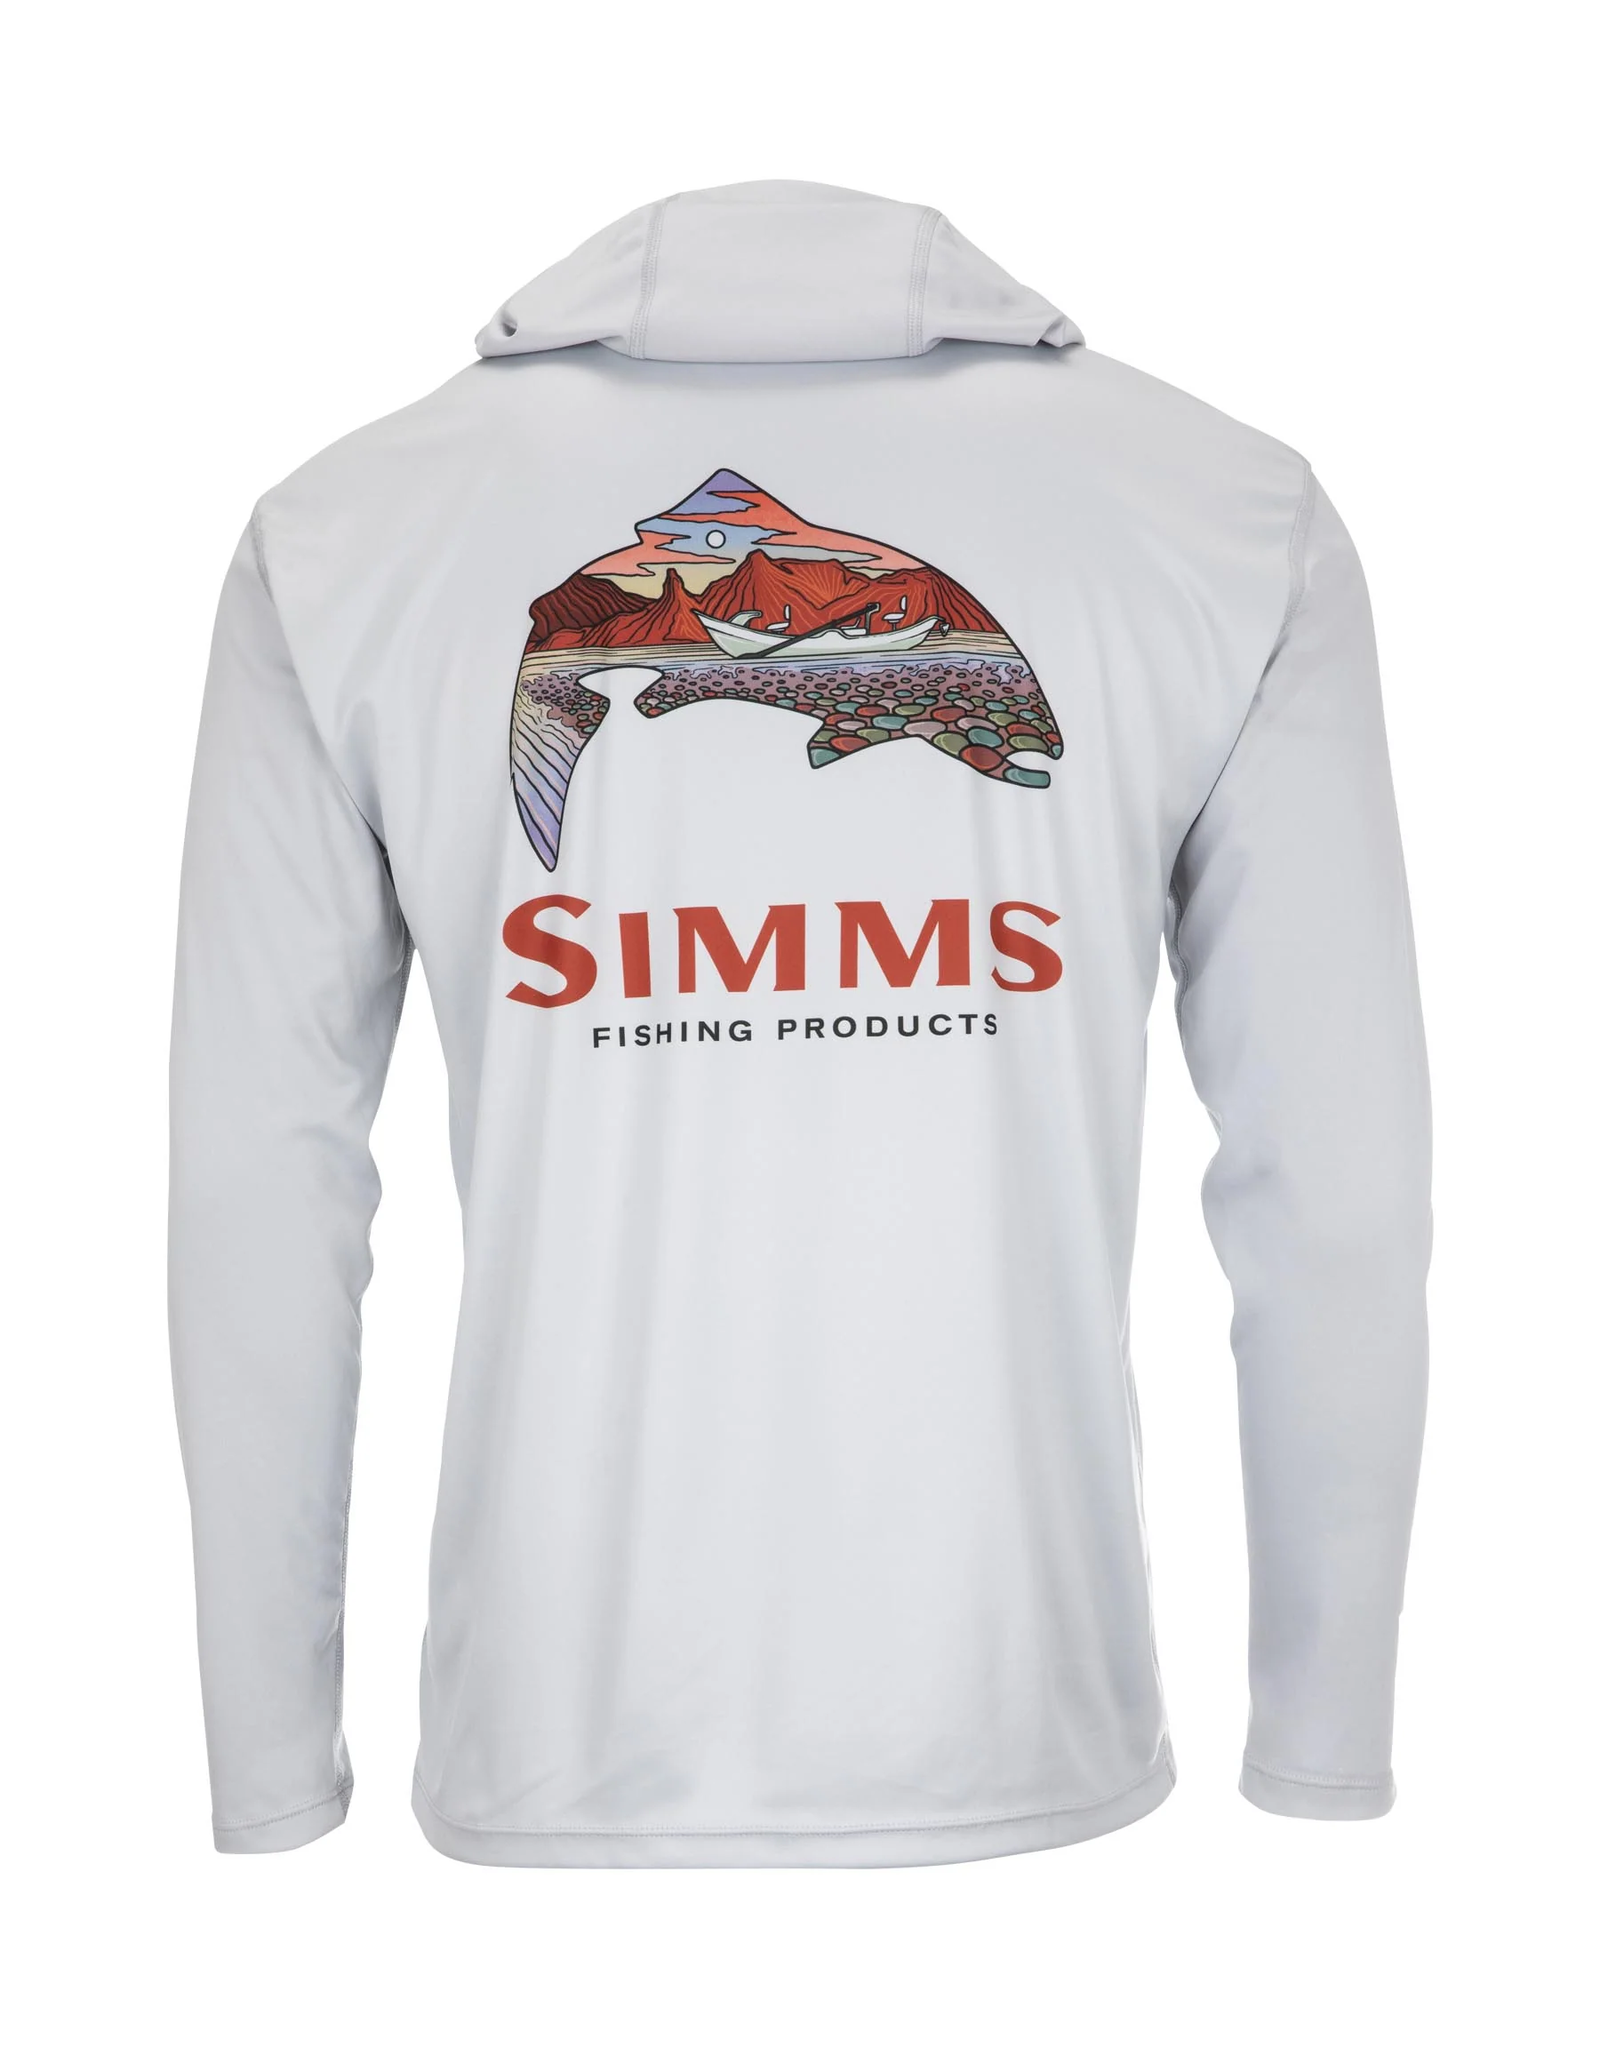 SIMMS M’s Tech Hoody - Artist Series